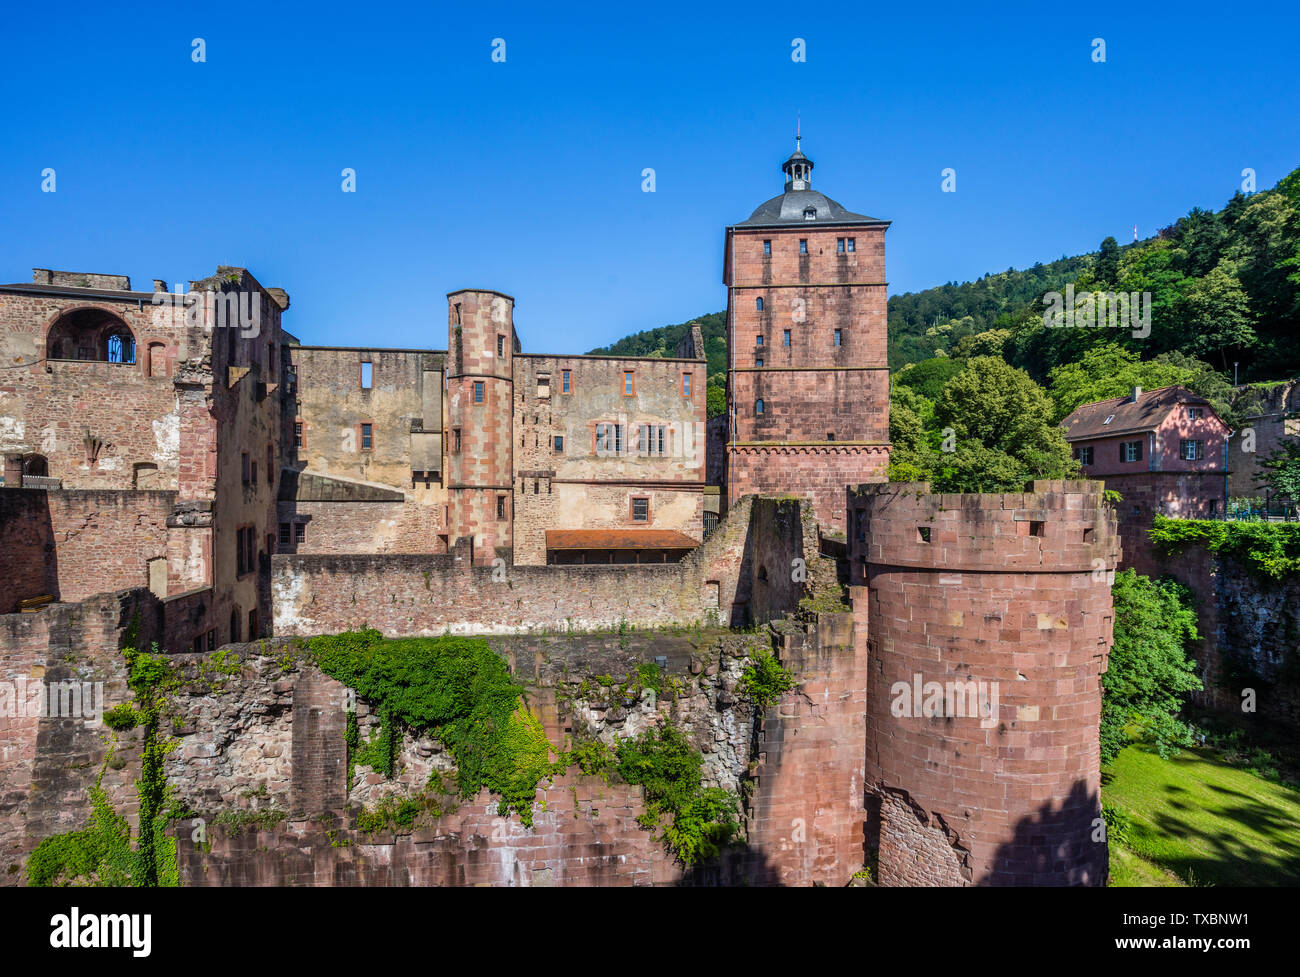 Blick auf die Burgruine Schloß Heidelberg, Heidelberg, Baden Württemberg, Deutschland Stockfoto